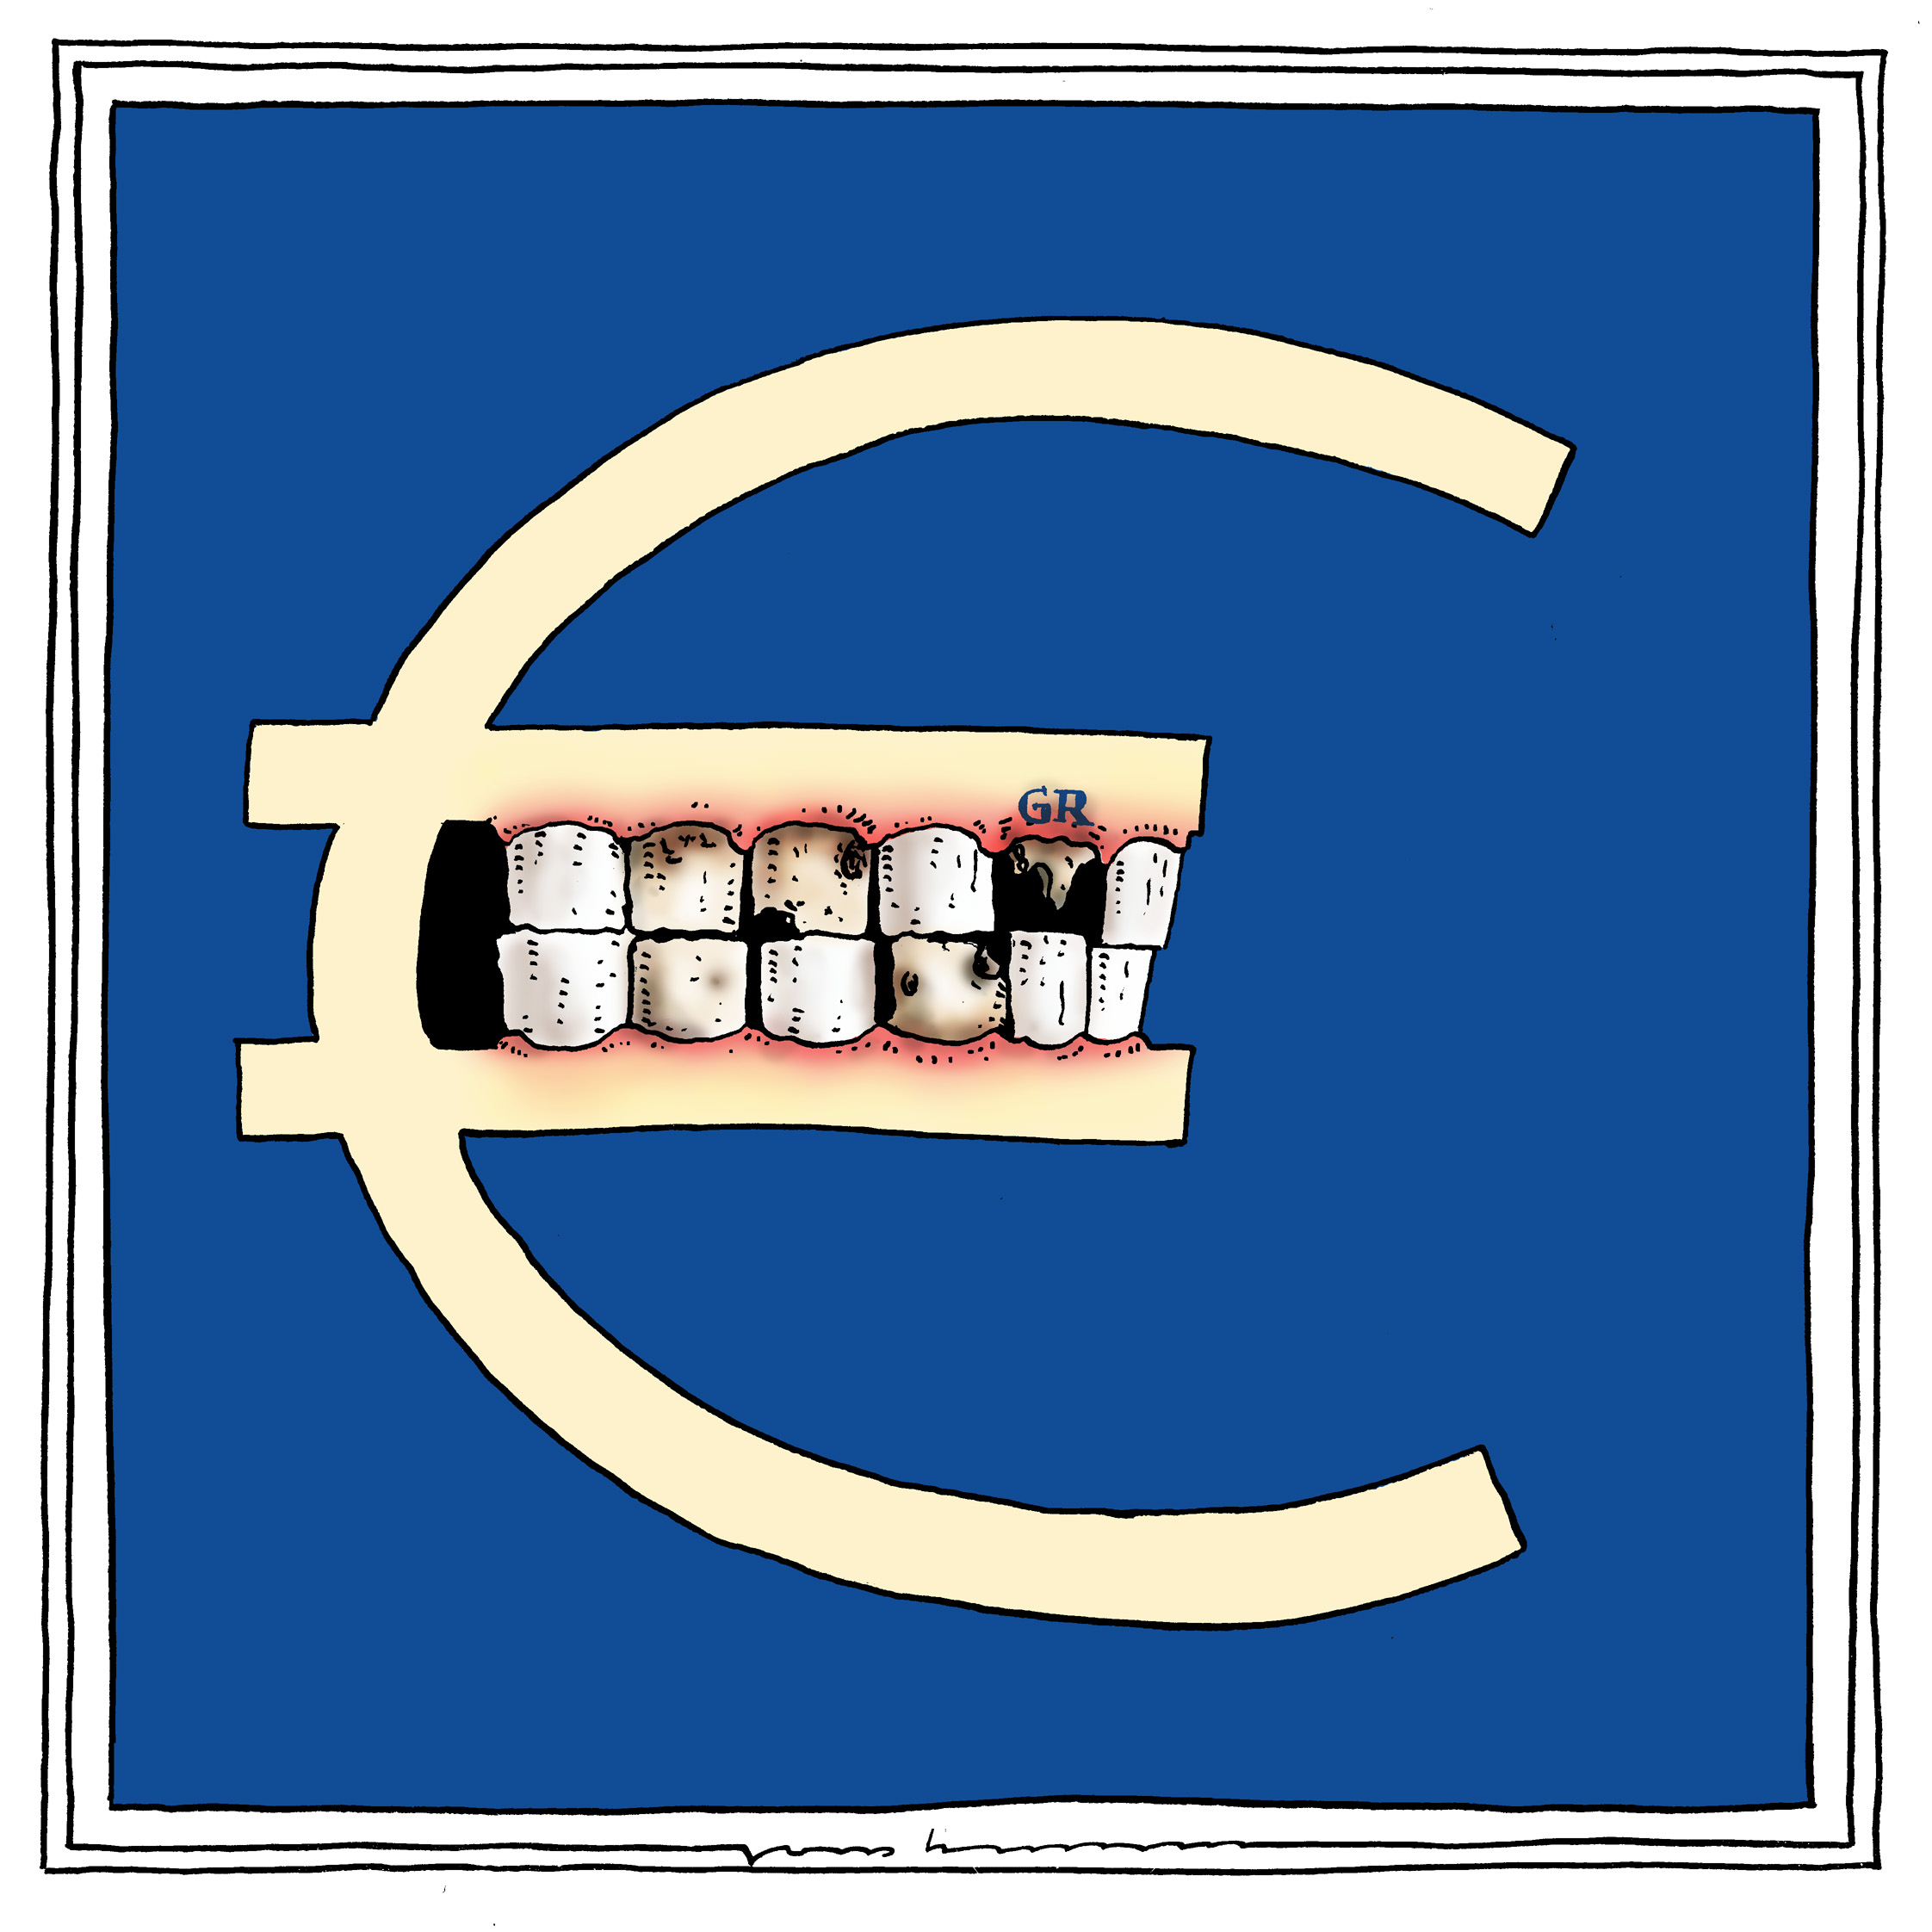 Griechenland die Zähne zeigen?